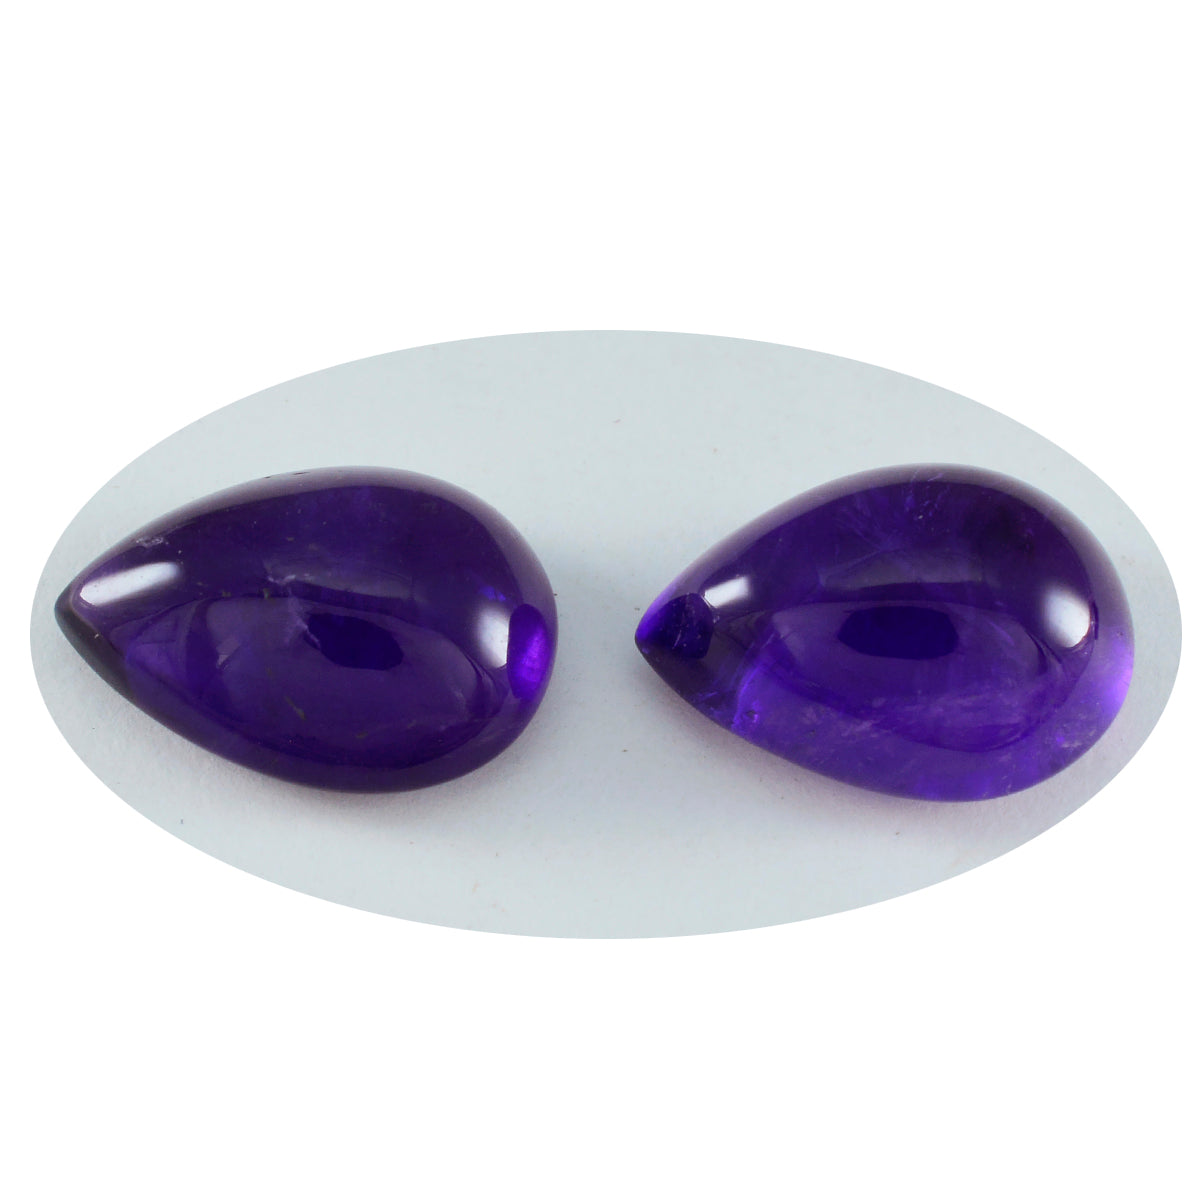 Riyogems 1PC Purple Amethyst Cabochon 10x14 mm Pear Shape startling Quality Gems